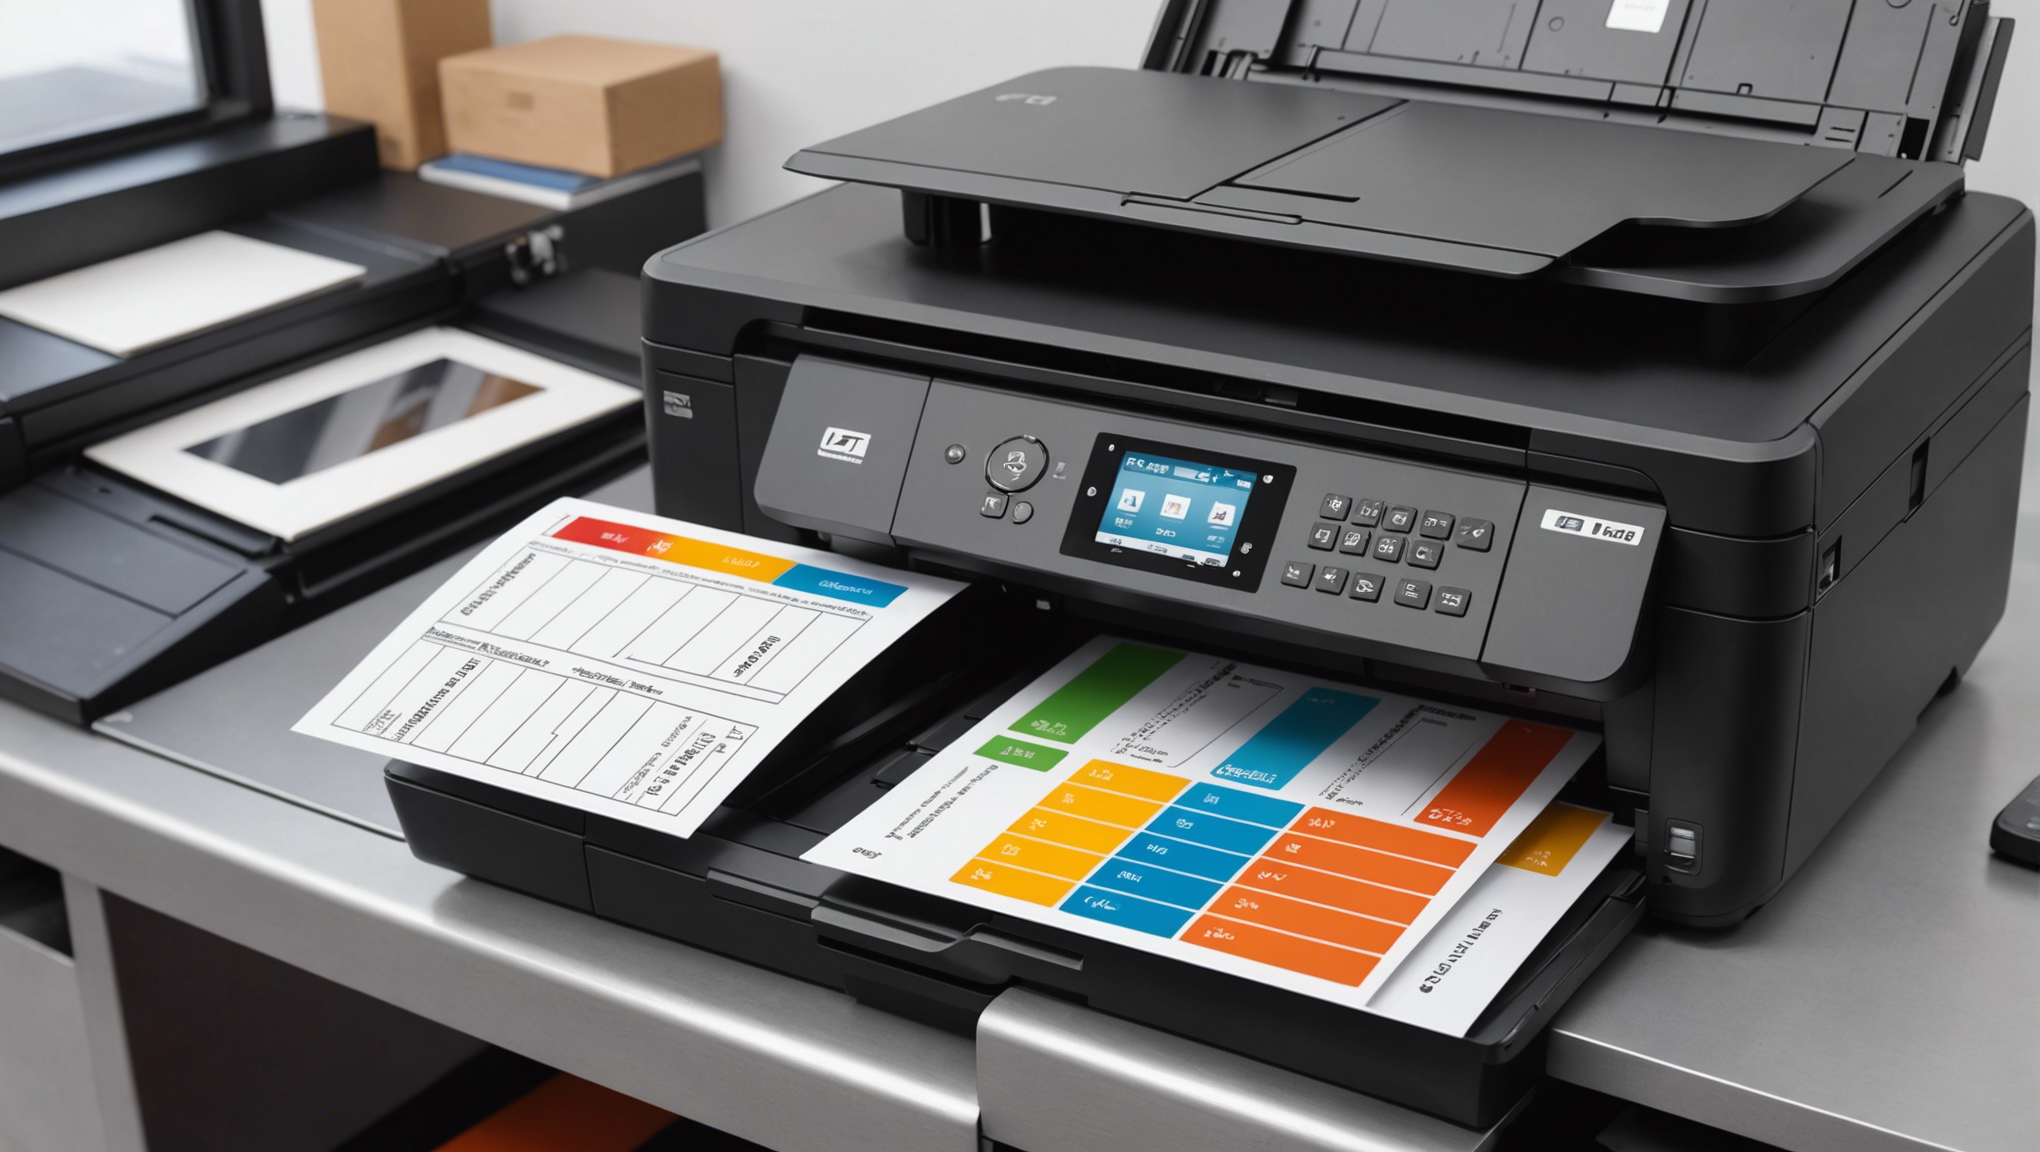 découvrez notre comparaison des gammes d'imprimantes professionnelles abordables pour trouver l'imprimante parfaite à prix accessible.